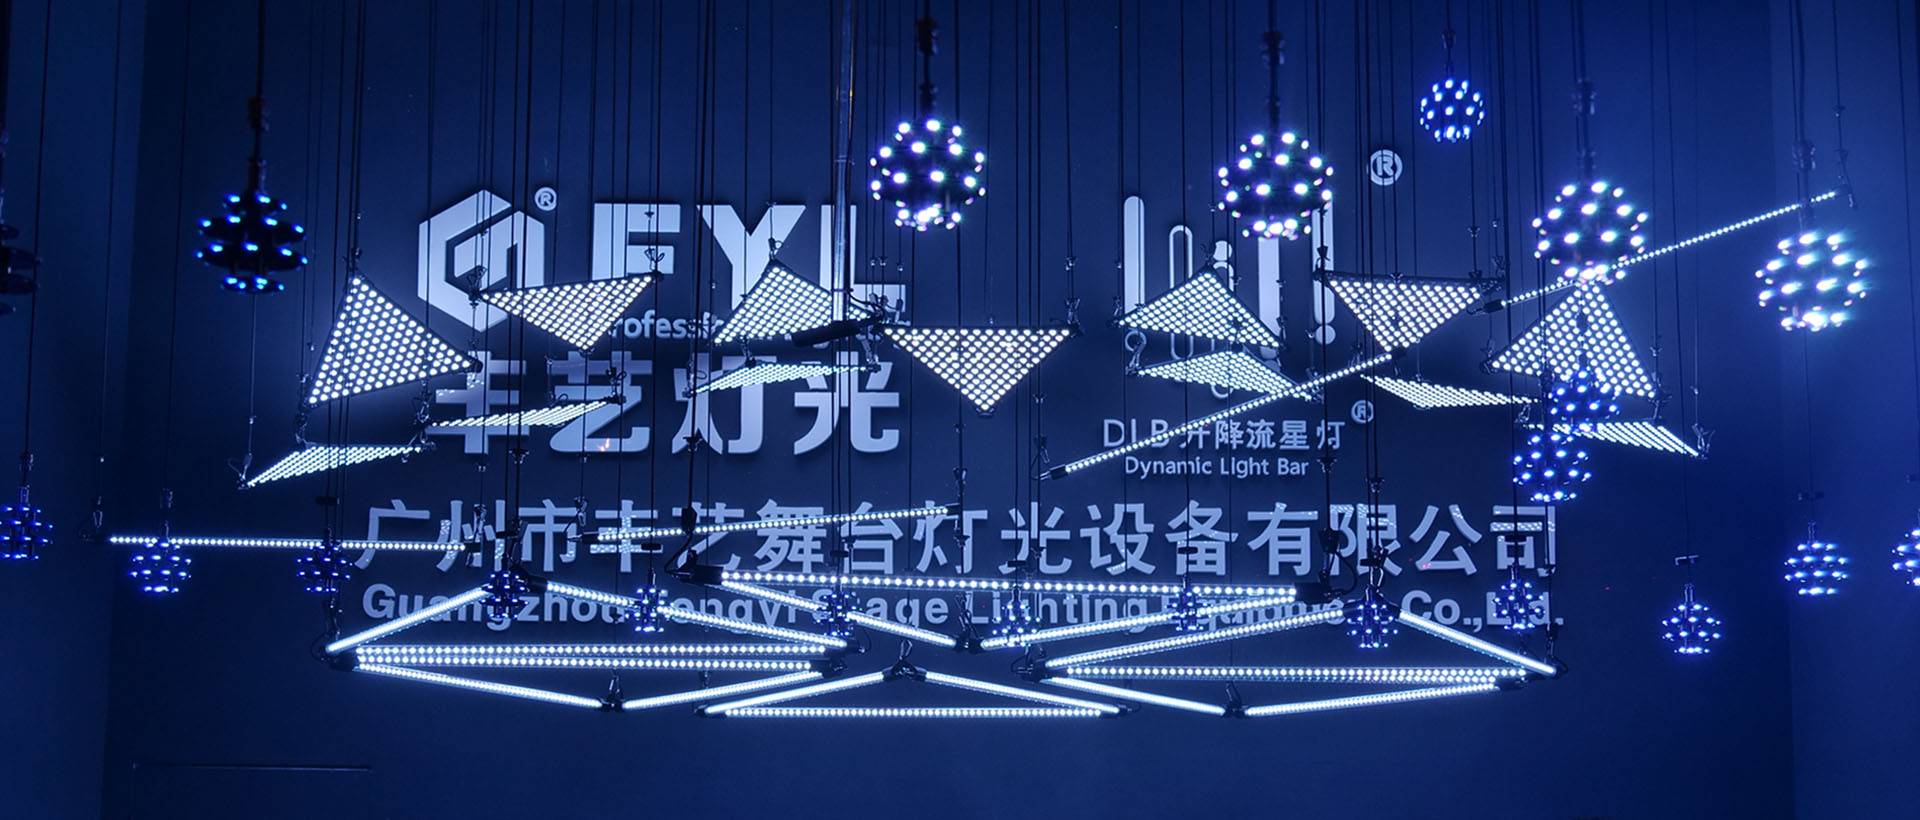 2020 Guangzhou Prolight & Sound výstava